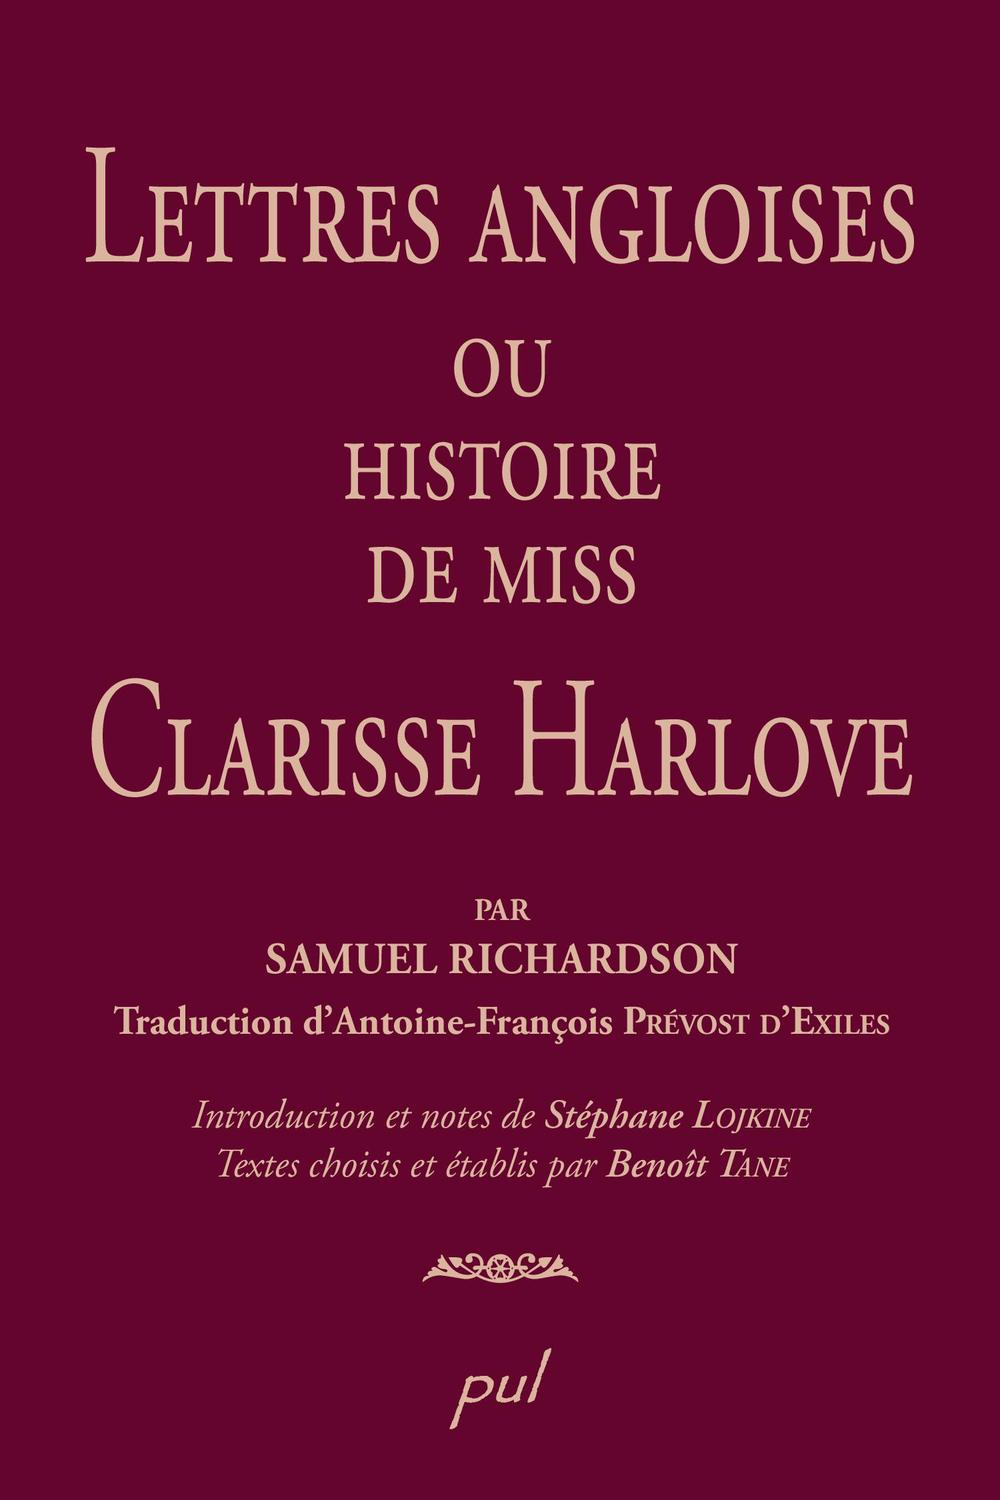 Lettres angloises ou l'histoire de Miss Clarisse Harlove - Samuel Richardson